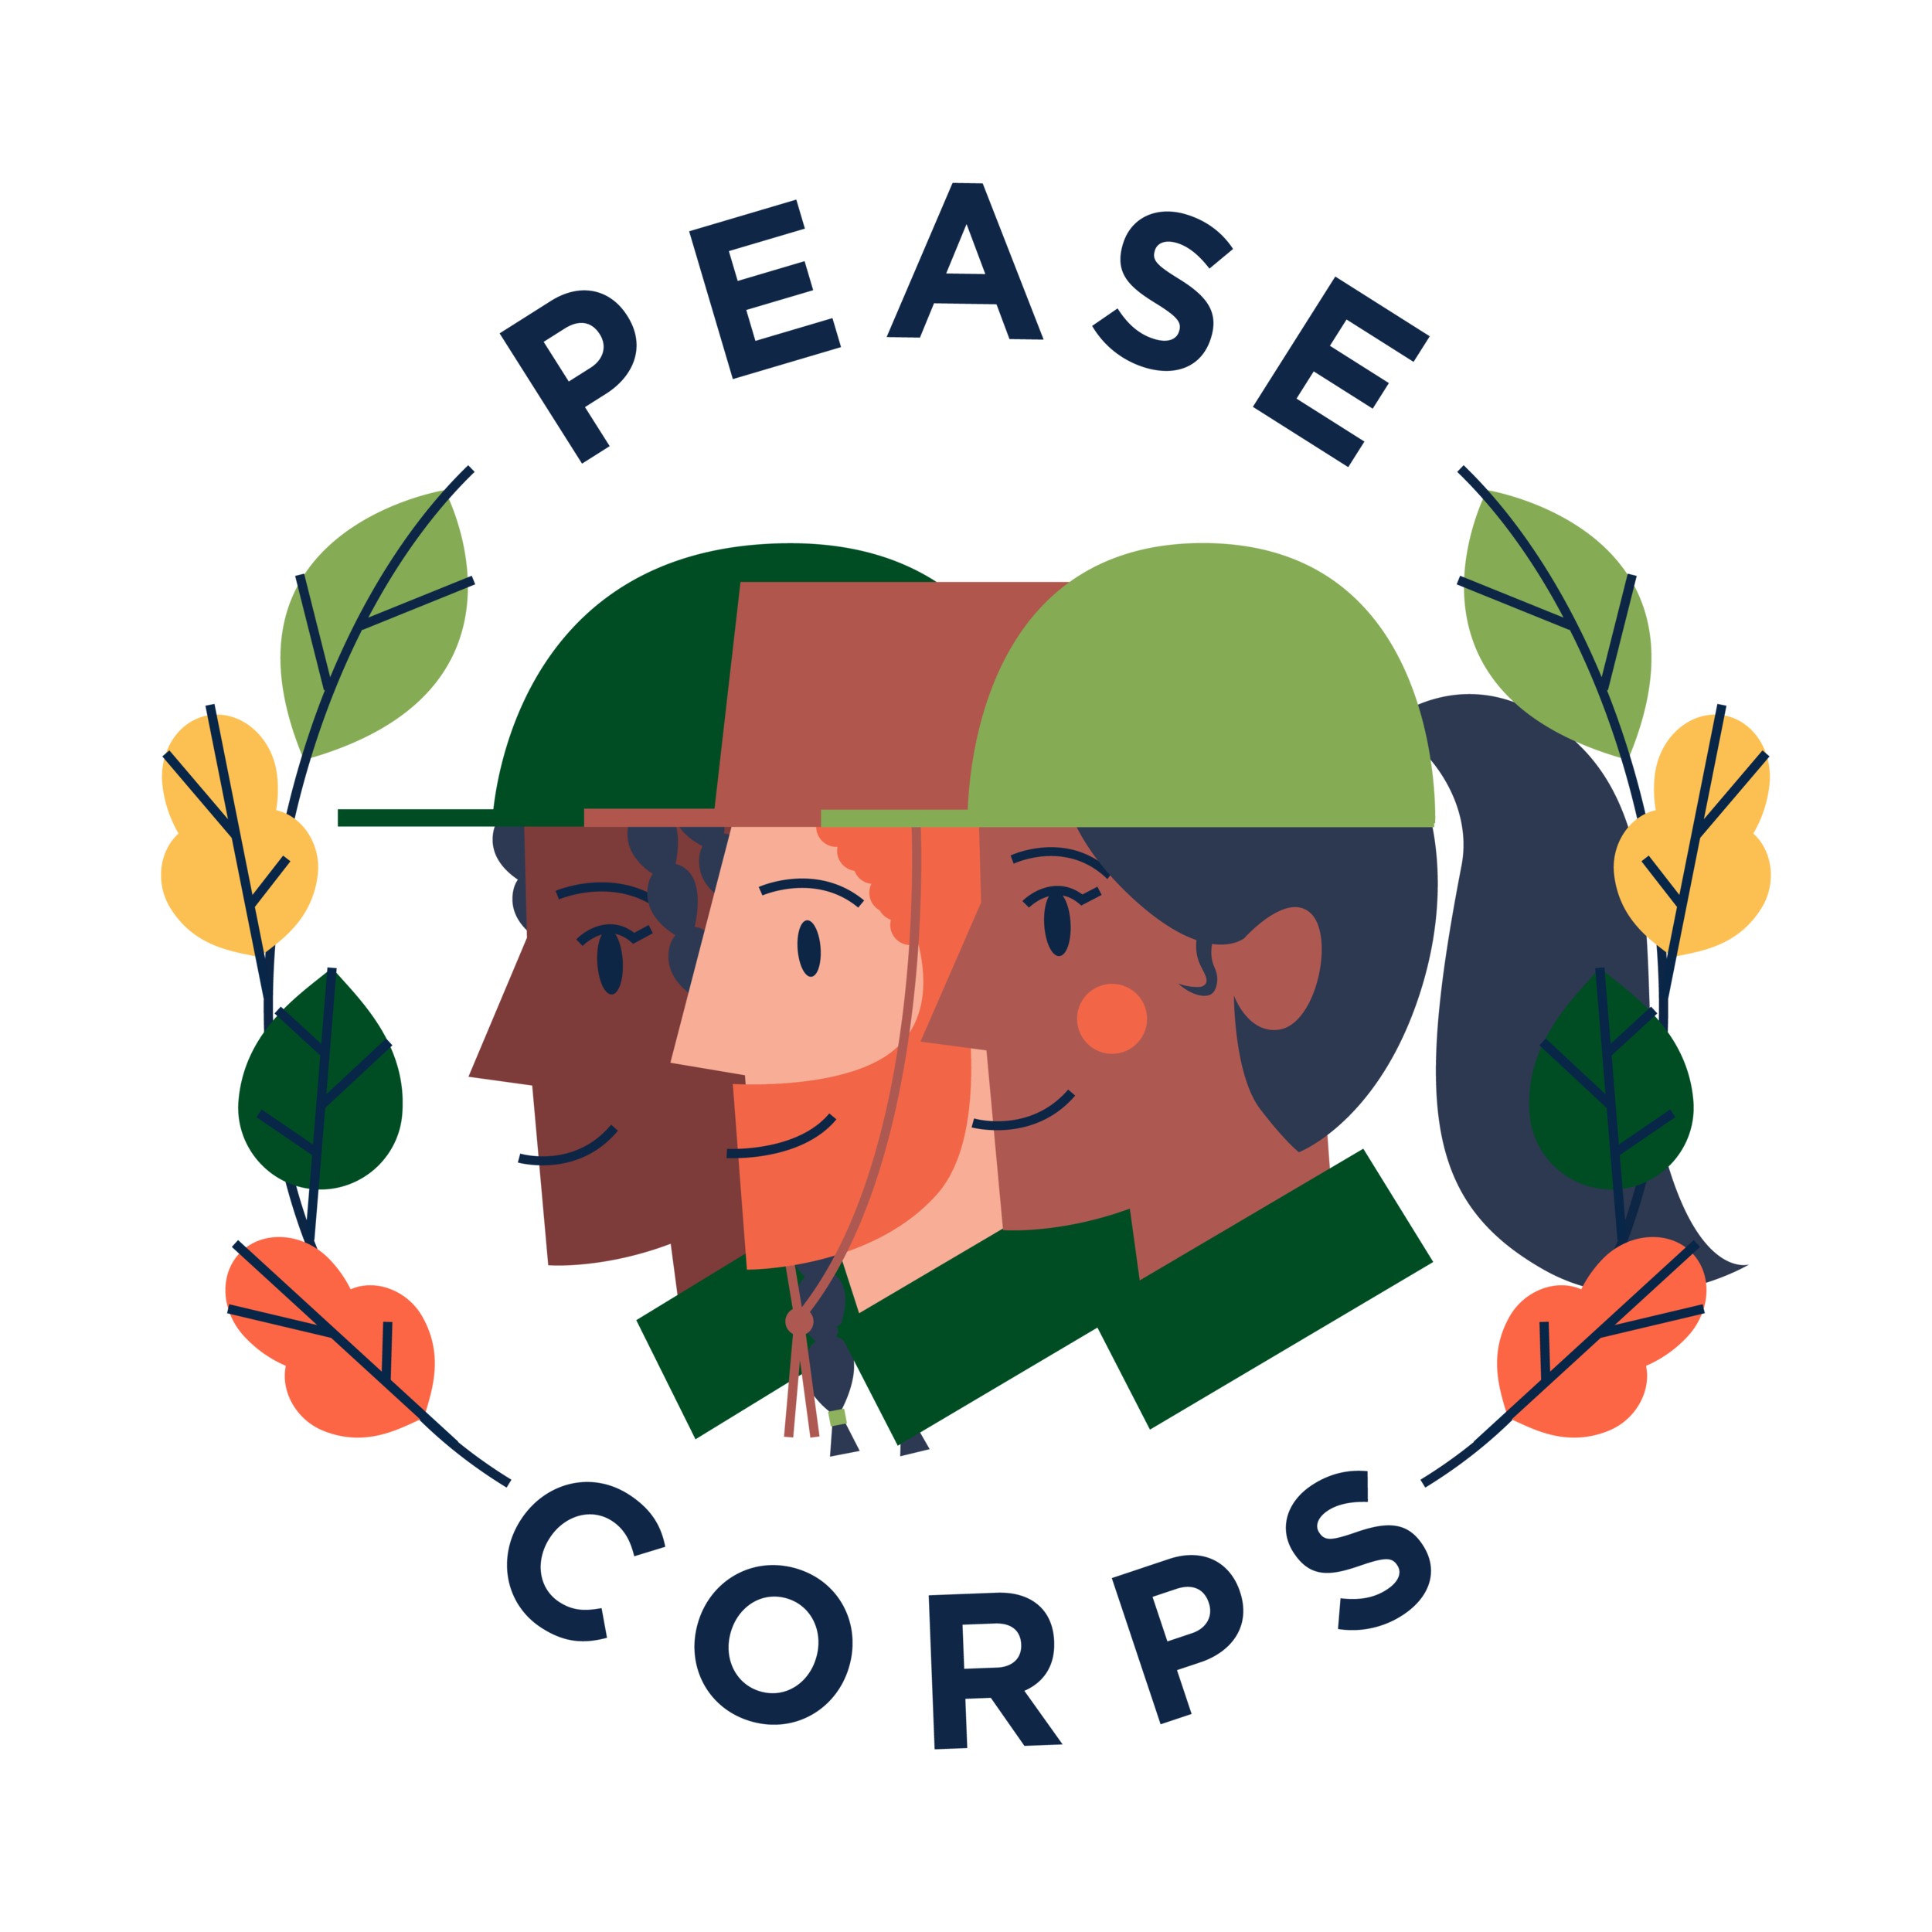 Logotipo del Cuerpo de Pease-03 (1).png